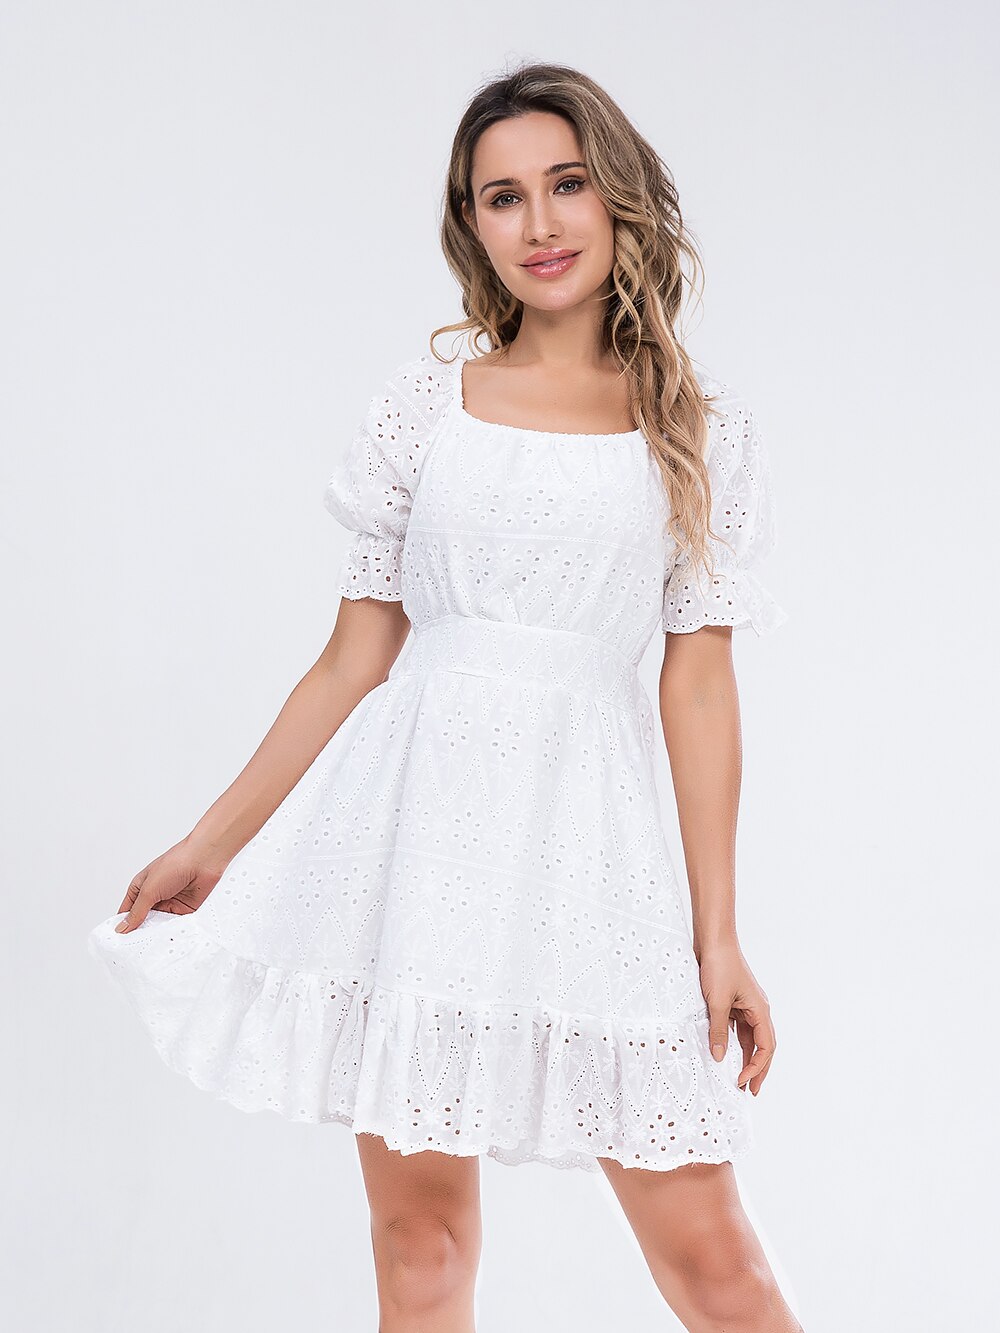 Women summer white dress Holiday casual high waist A-line Dress